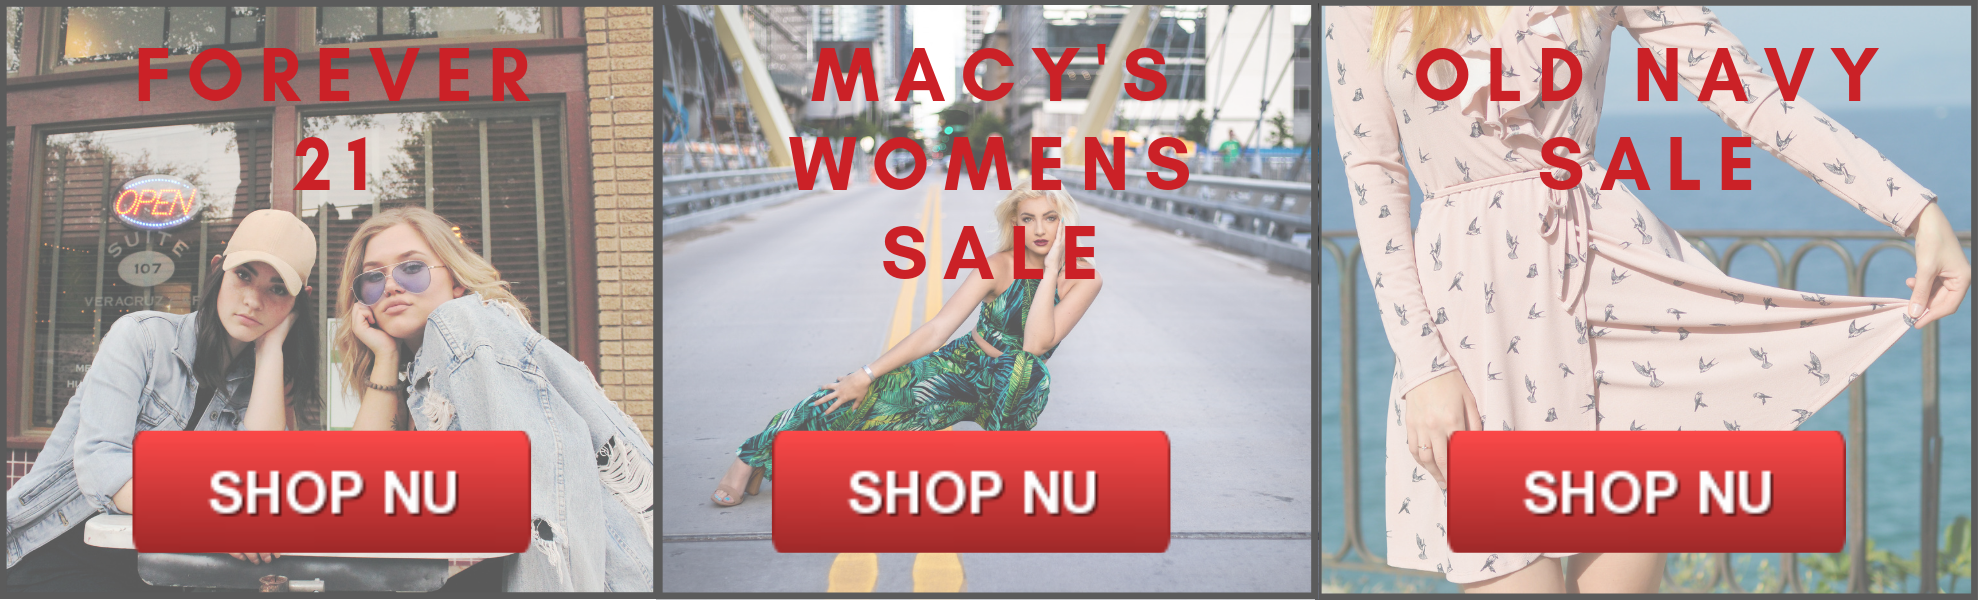 Mængde penge servitrice Waterfront Billigt tøj til mænd og billigt tøj til kvinder på forårsudsalg i USA -  guide